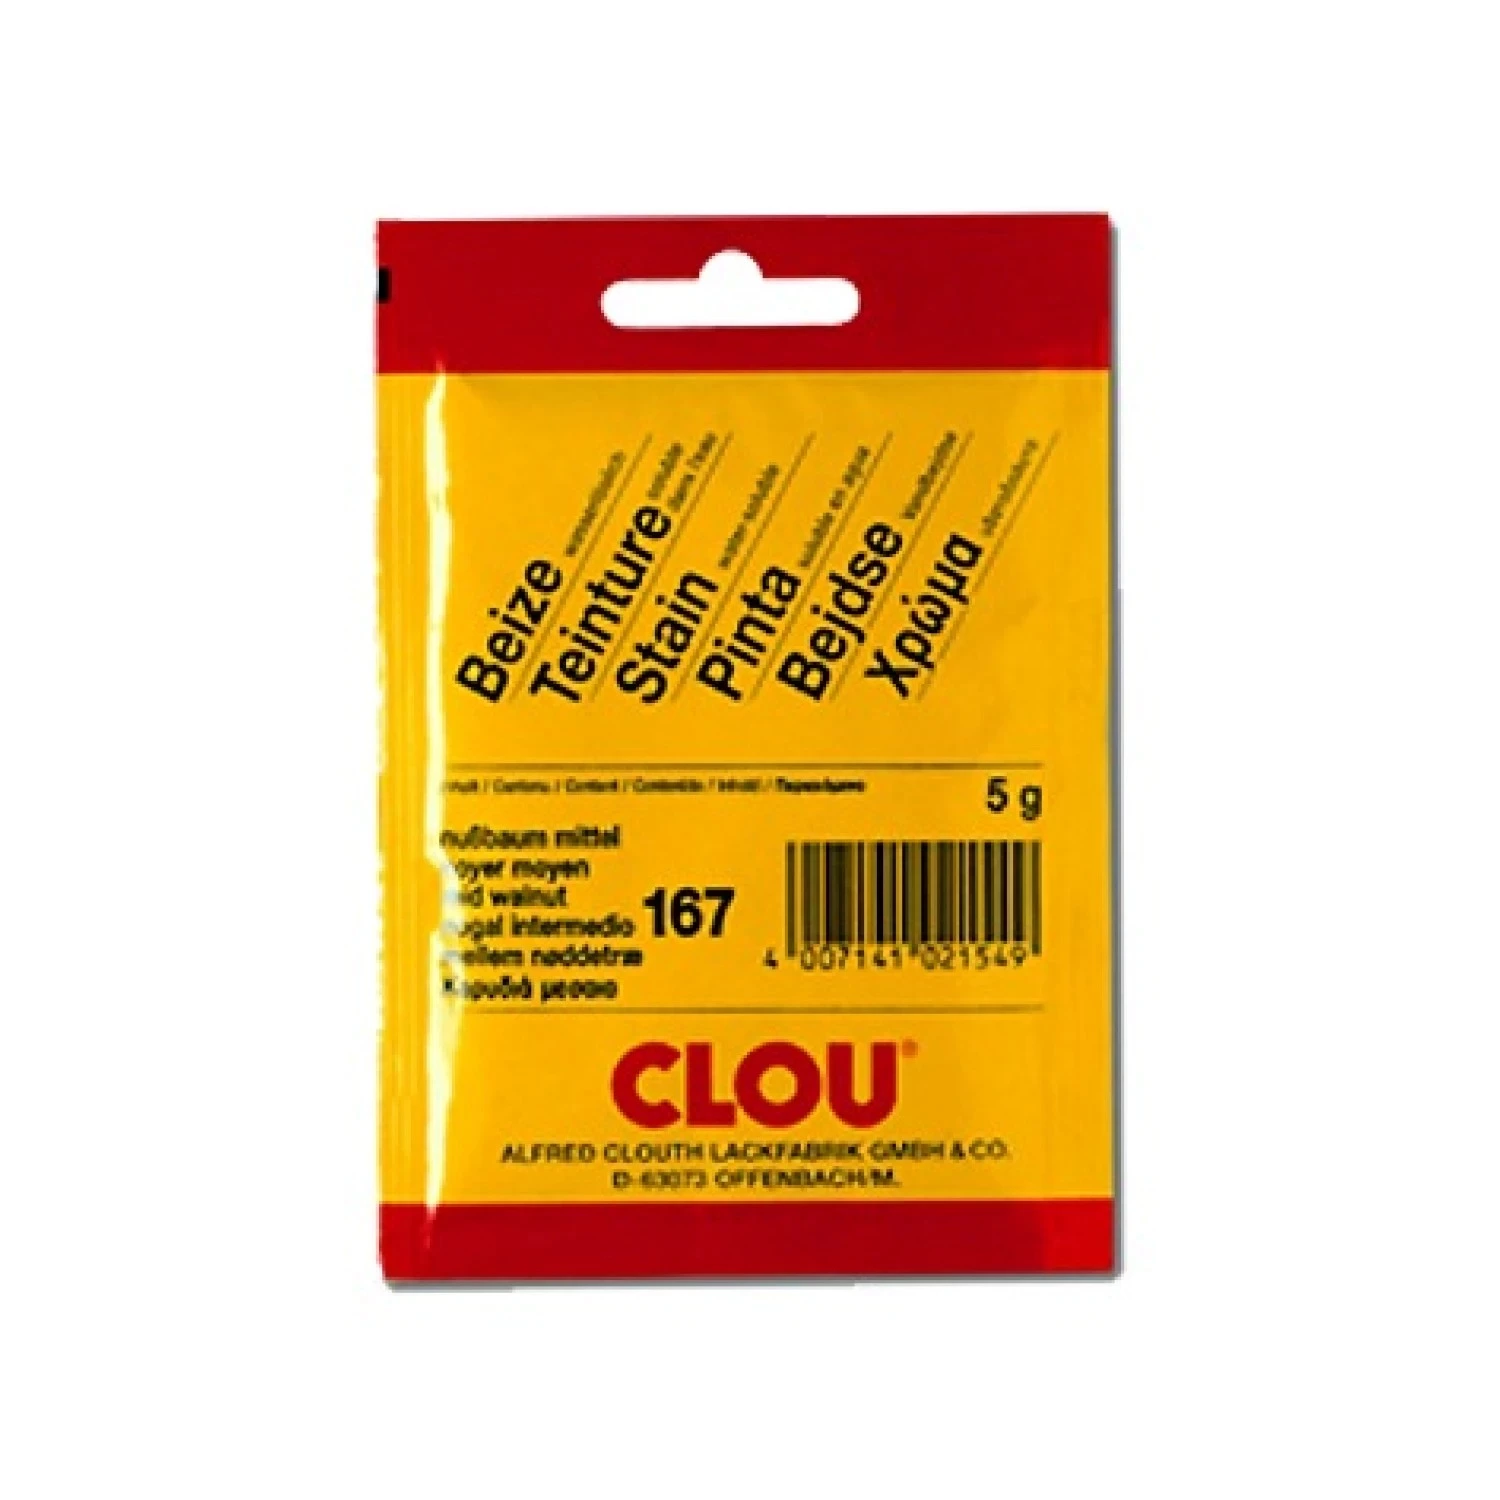 Clou Zakje Waterbeits - 152 Oranje Geel - goed voor 250ml-image